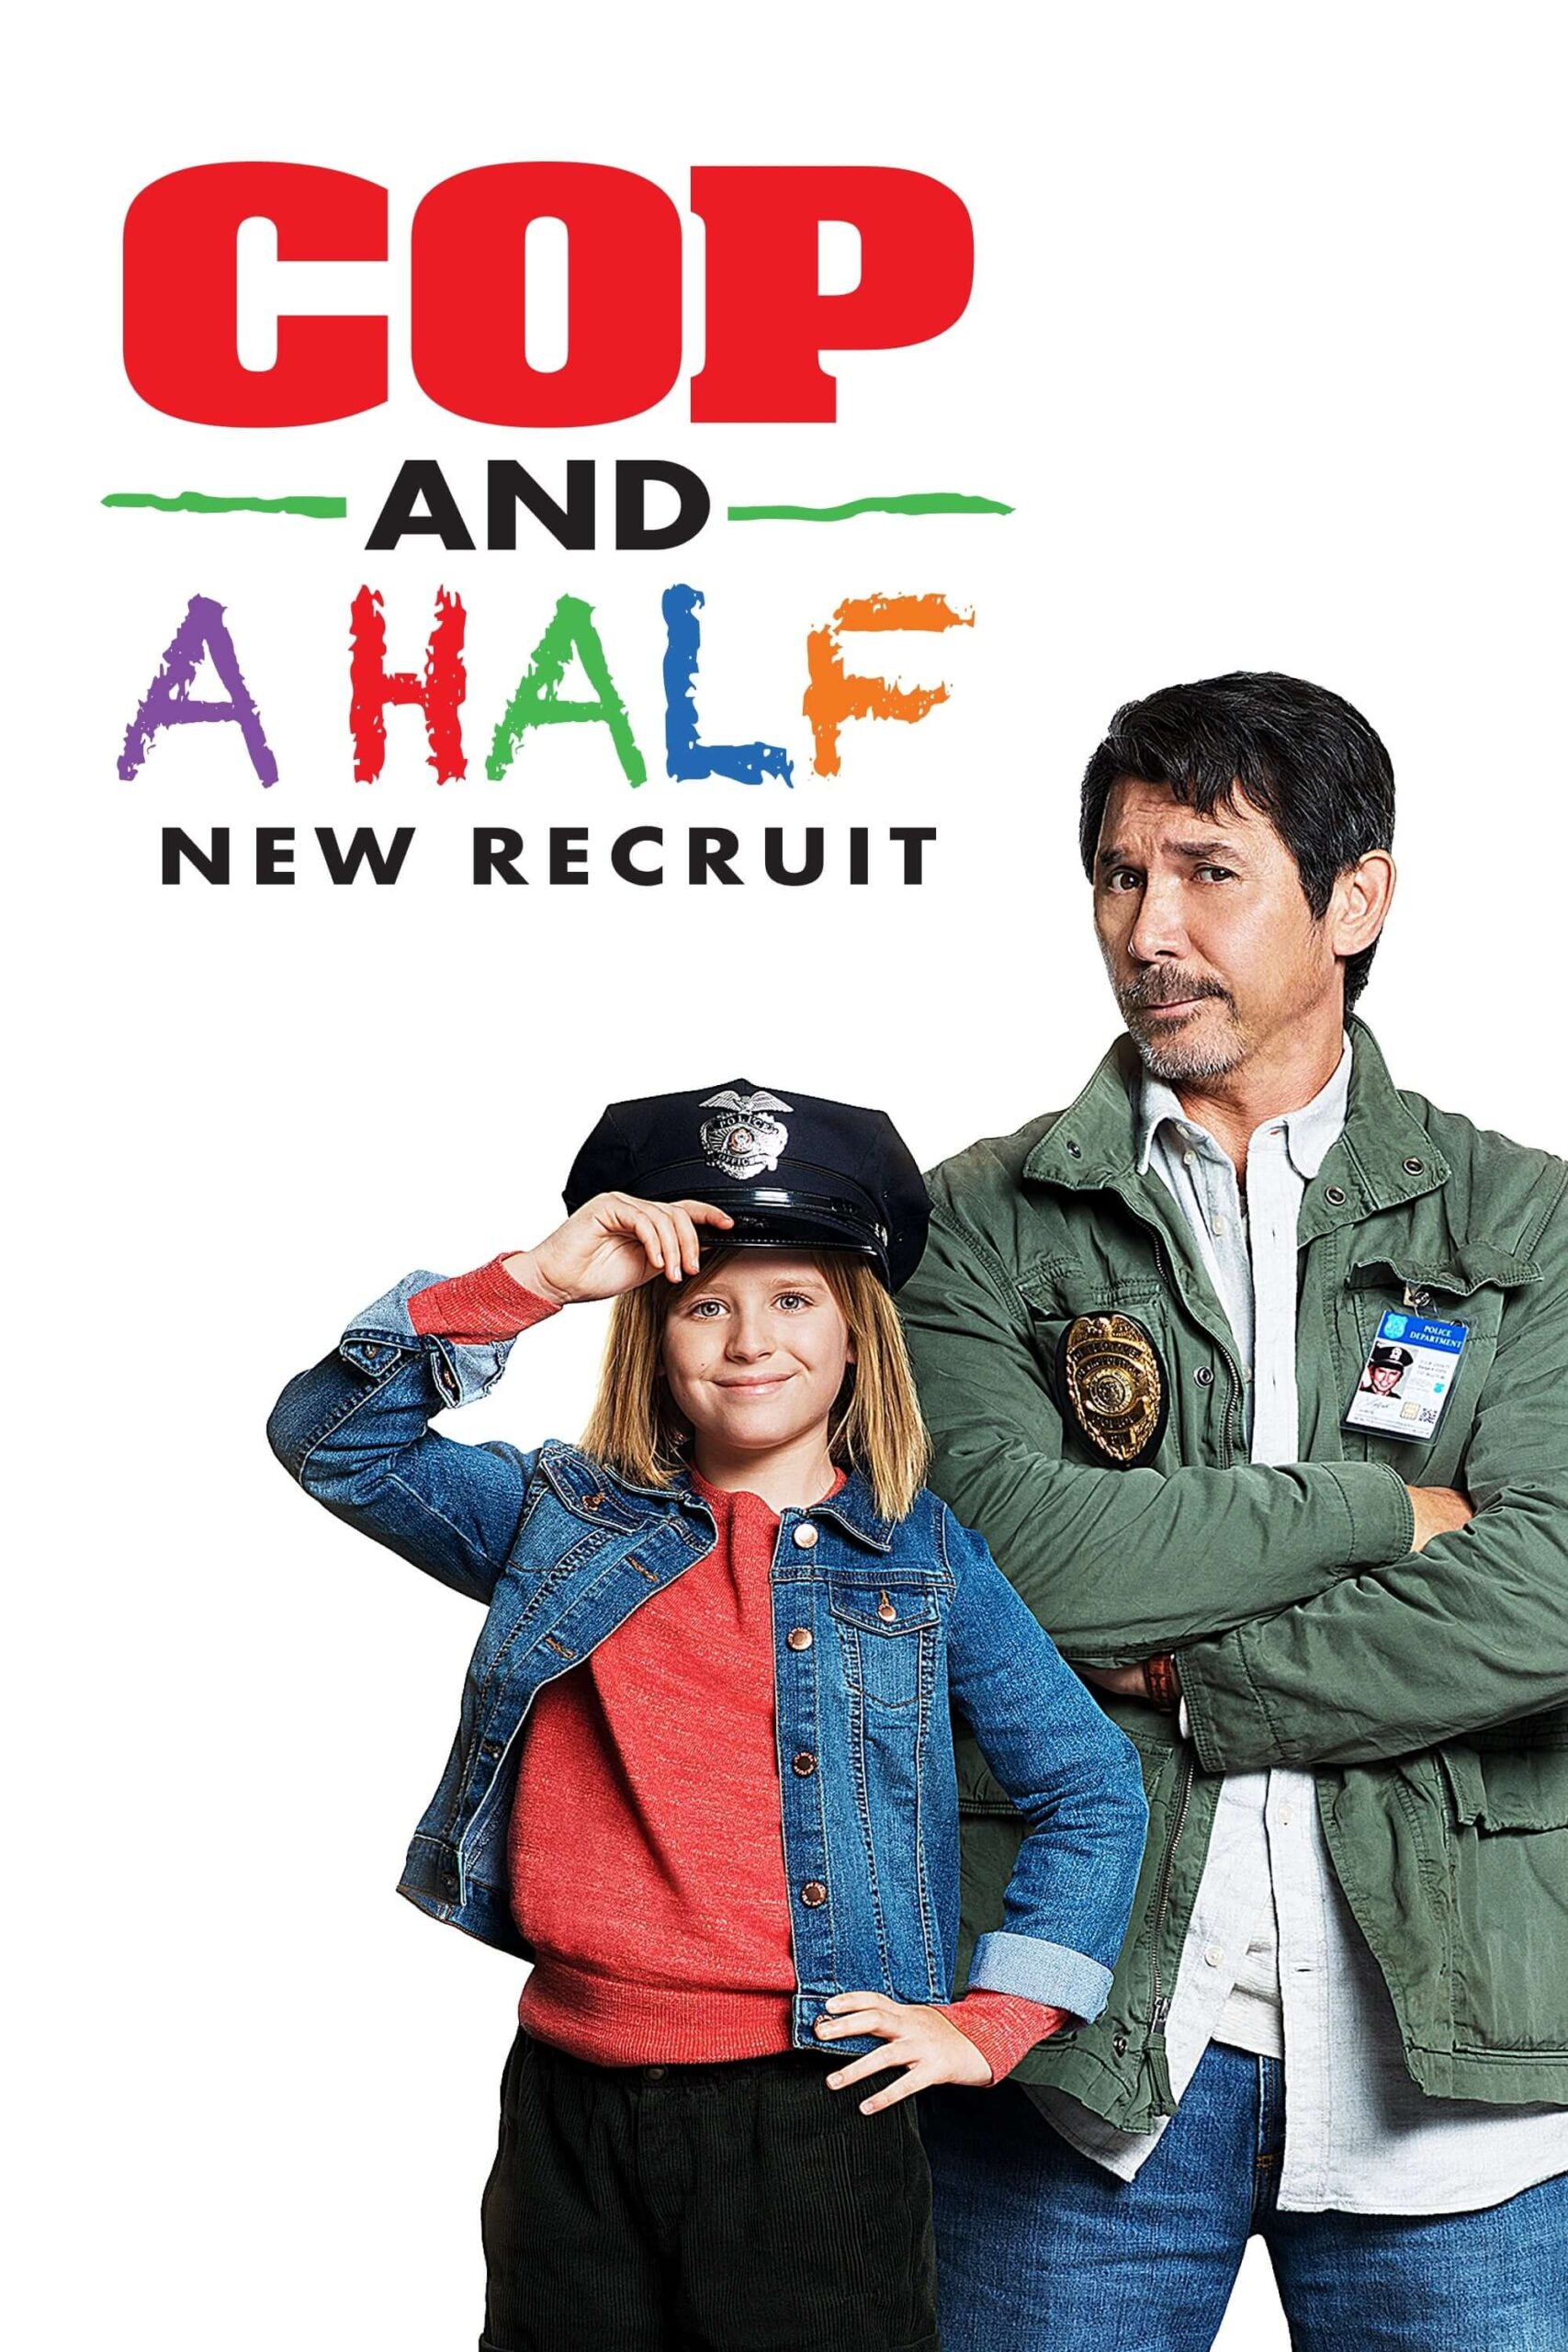 یک پلیس و نصفی : استخدام جدید (Cop and a Half: New Recruit)